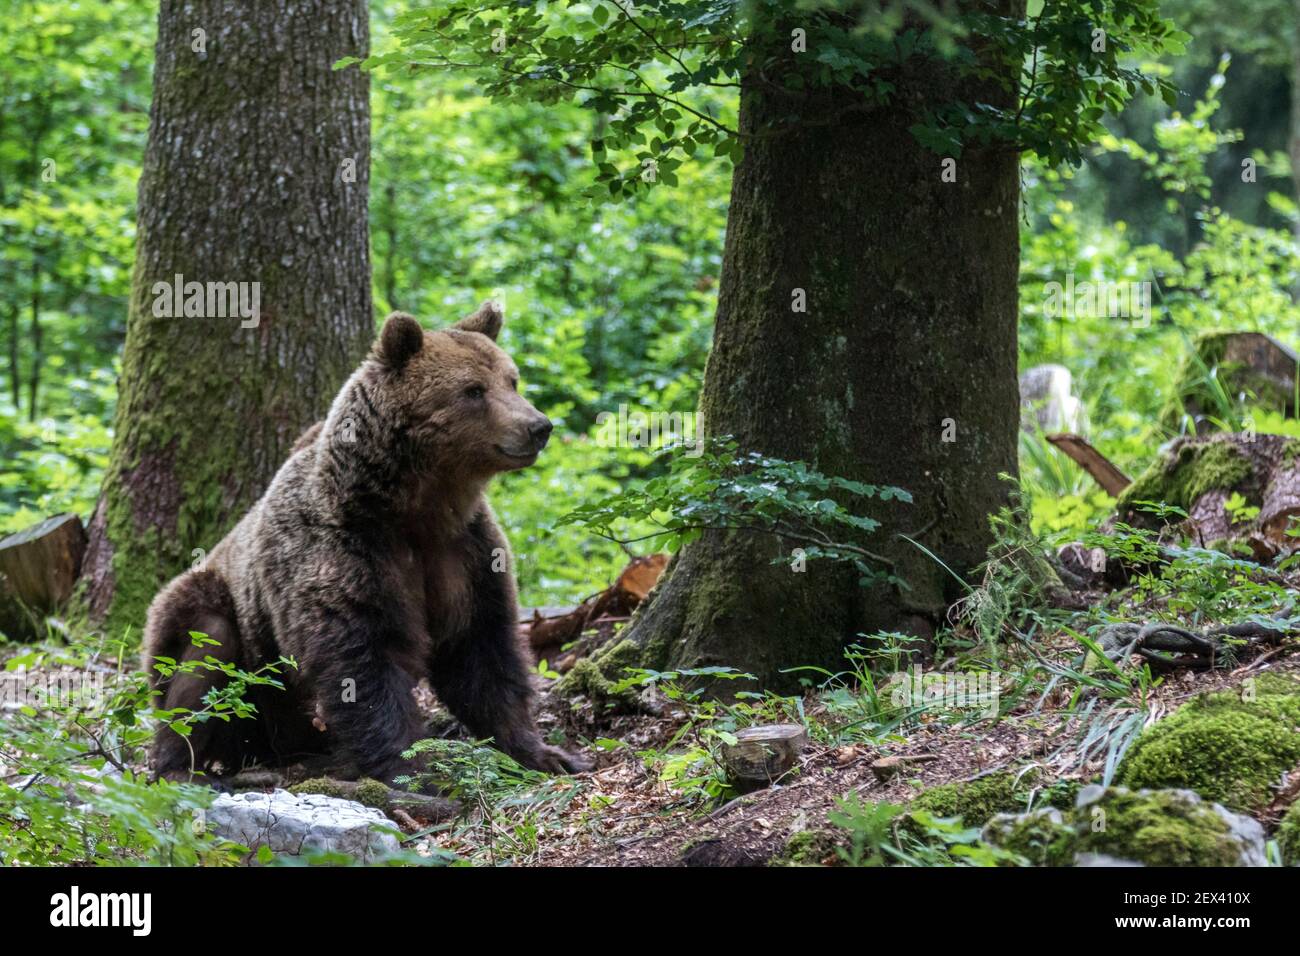 Eurasian brown bear (Ursus arctos arctos) sitting, Slovenia Stock Photo